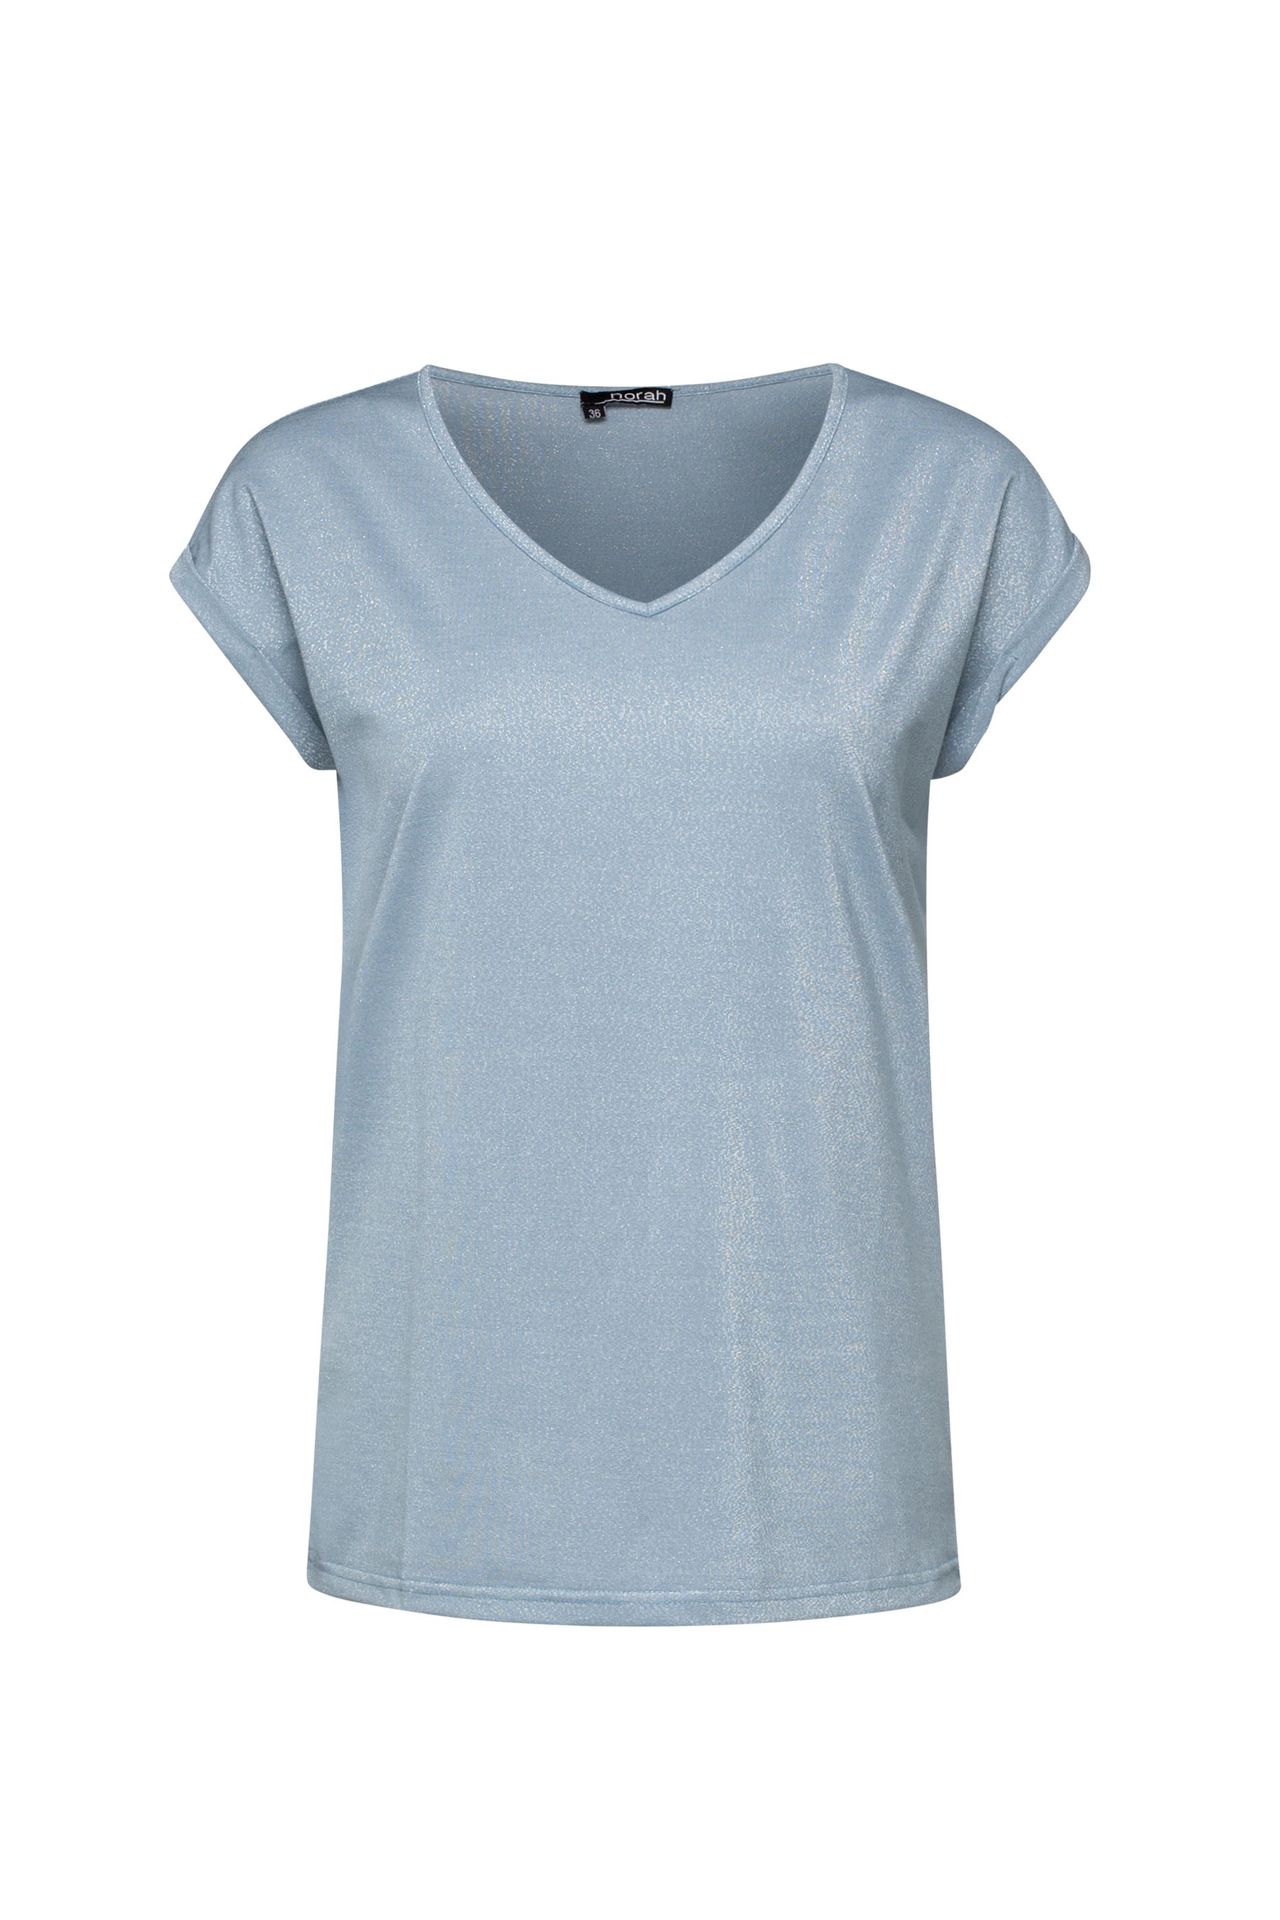 Norah Shirt blauw zilver  light blue 210051-401